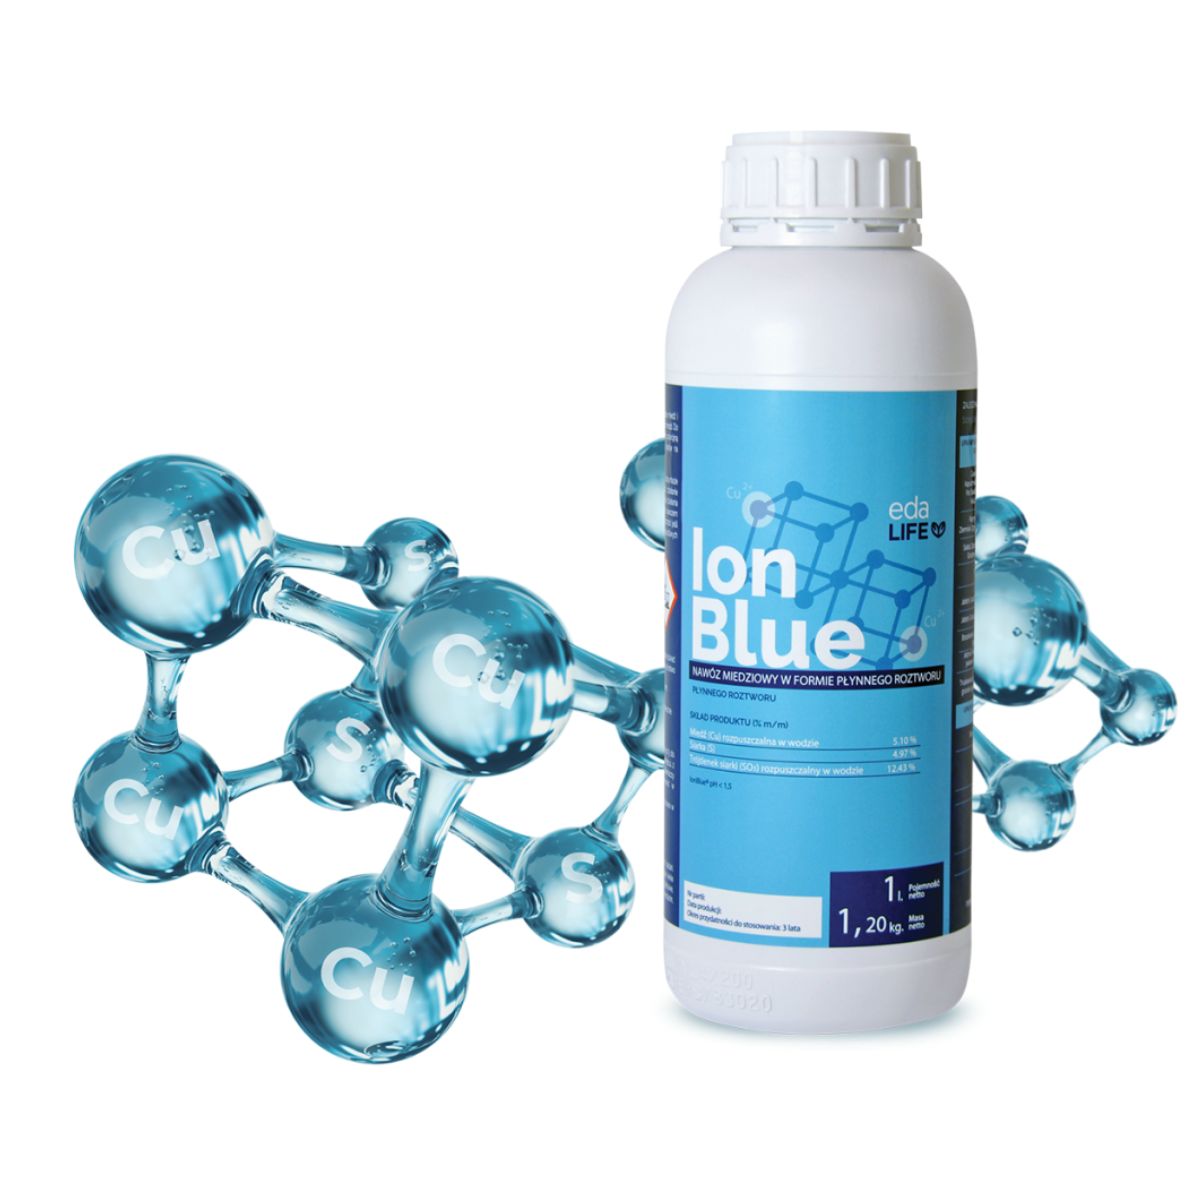 IonBlue - bioaktywne jony miedzi i siarki